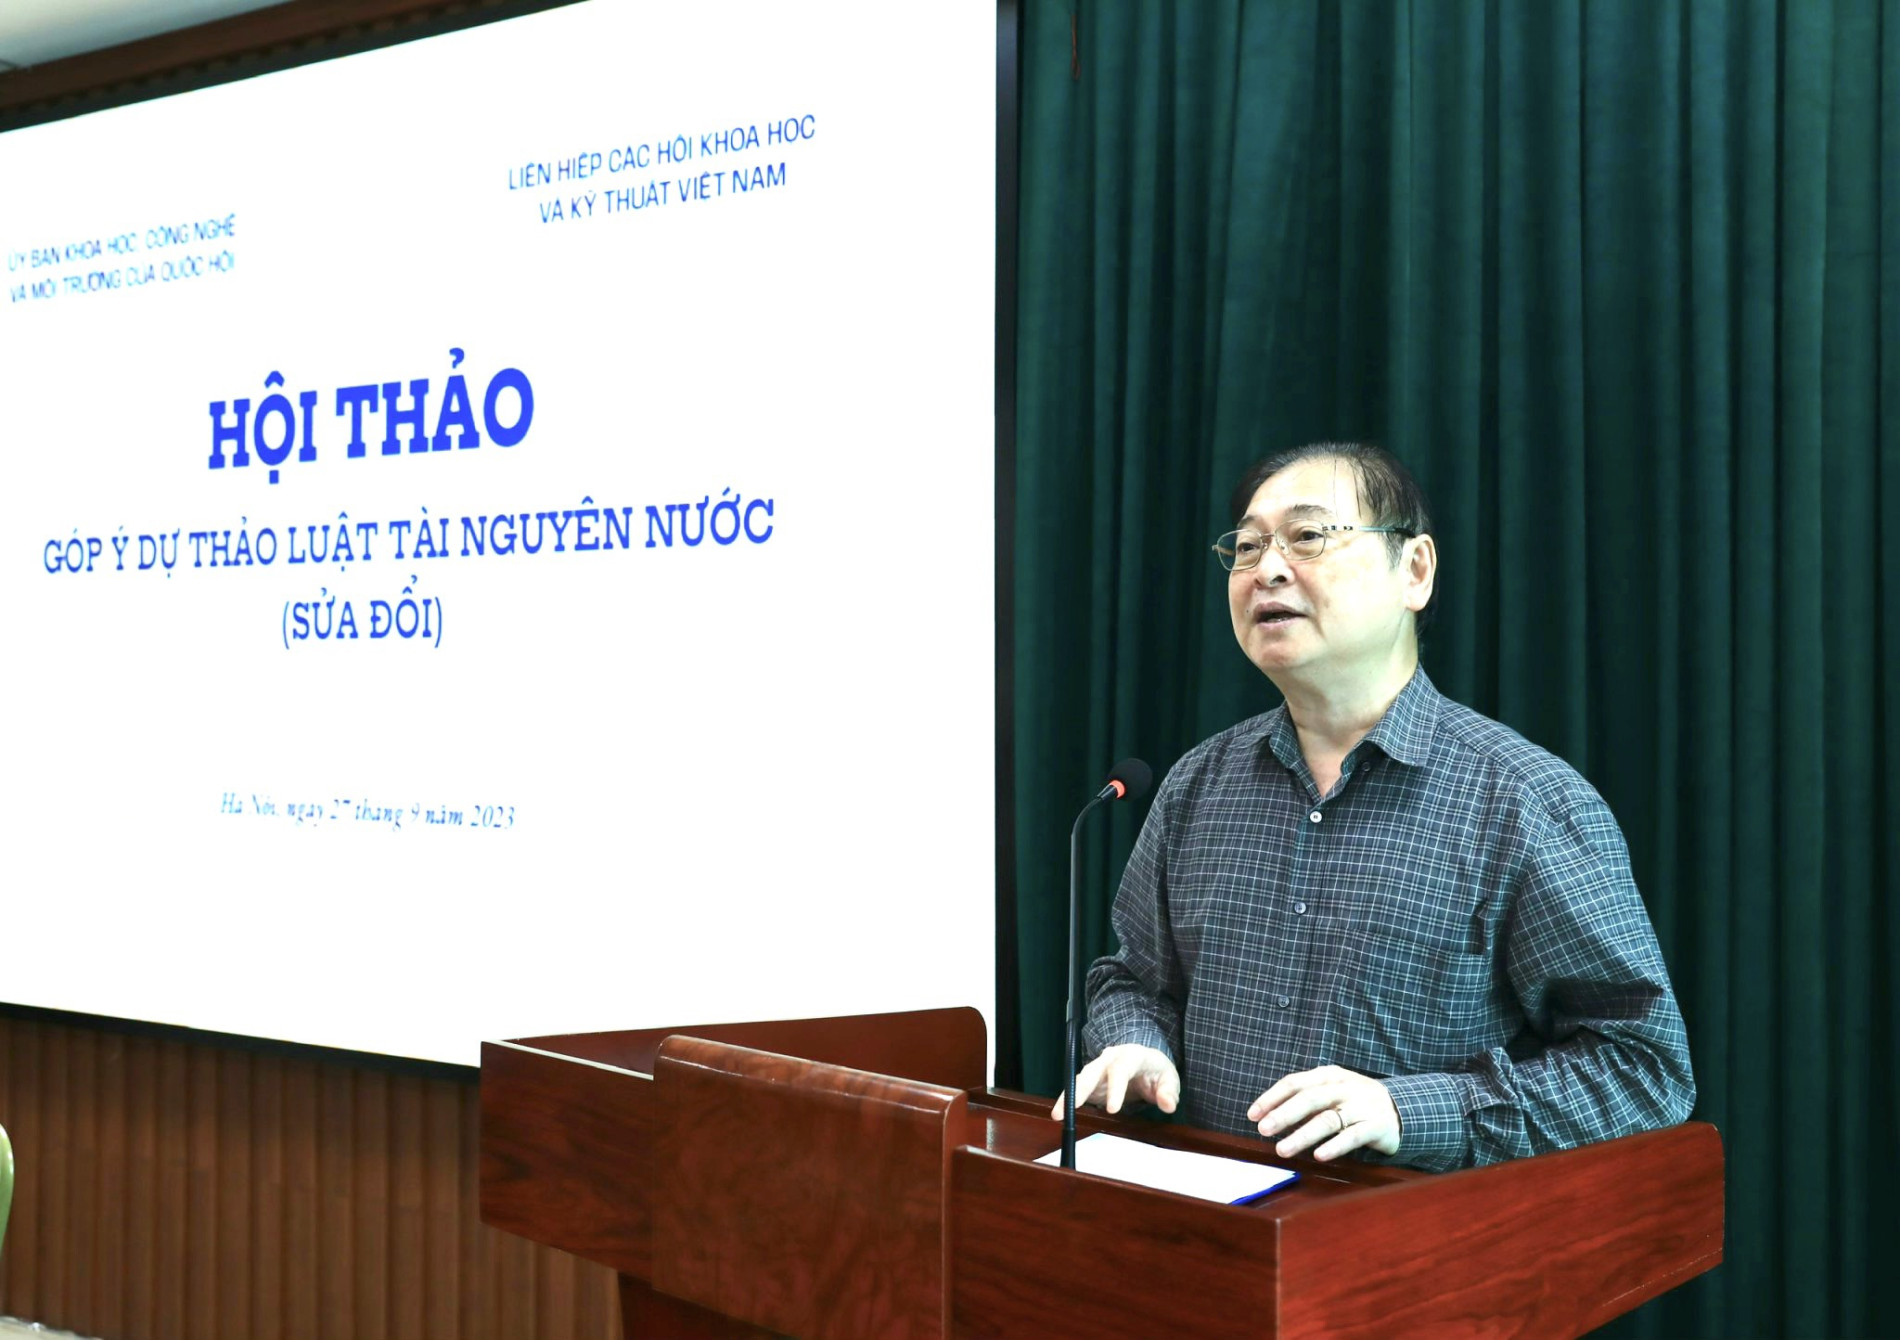 Chủ tịch Liên hiệp Hội Việt Nam Phan Xuân Dũng phát biểu khai mạc